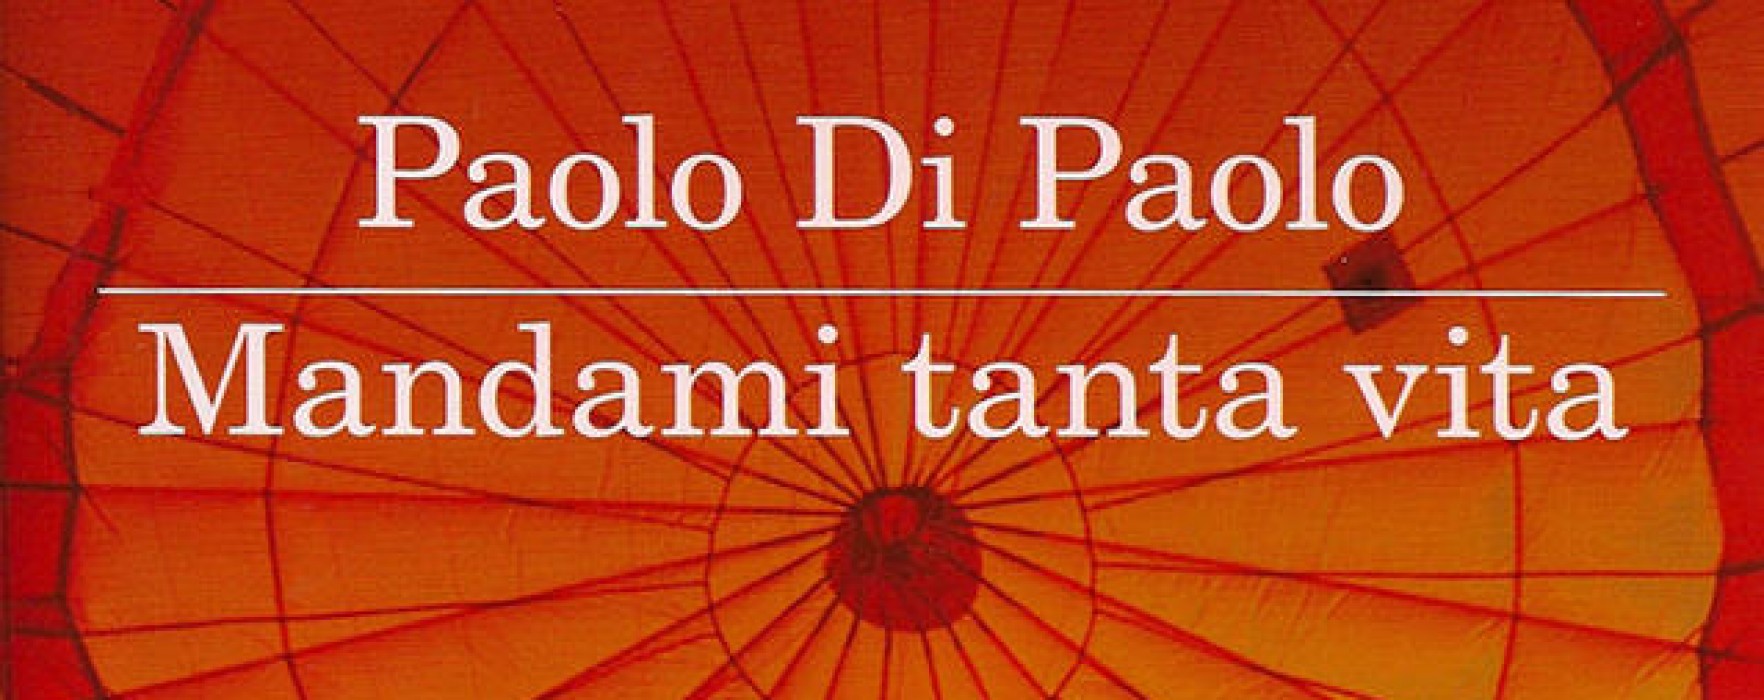 Mandami tanta vita. Paolo Di Paolo – 3º classificato Premio STREGA 2013